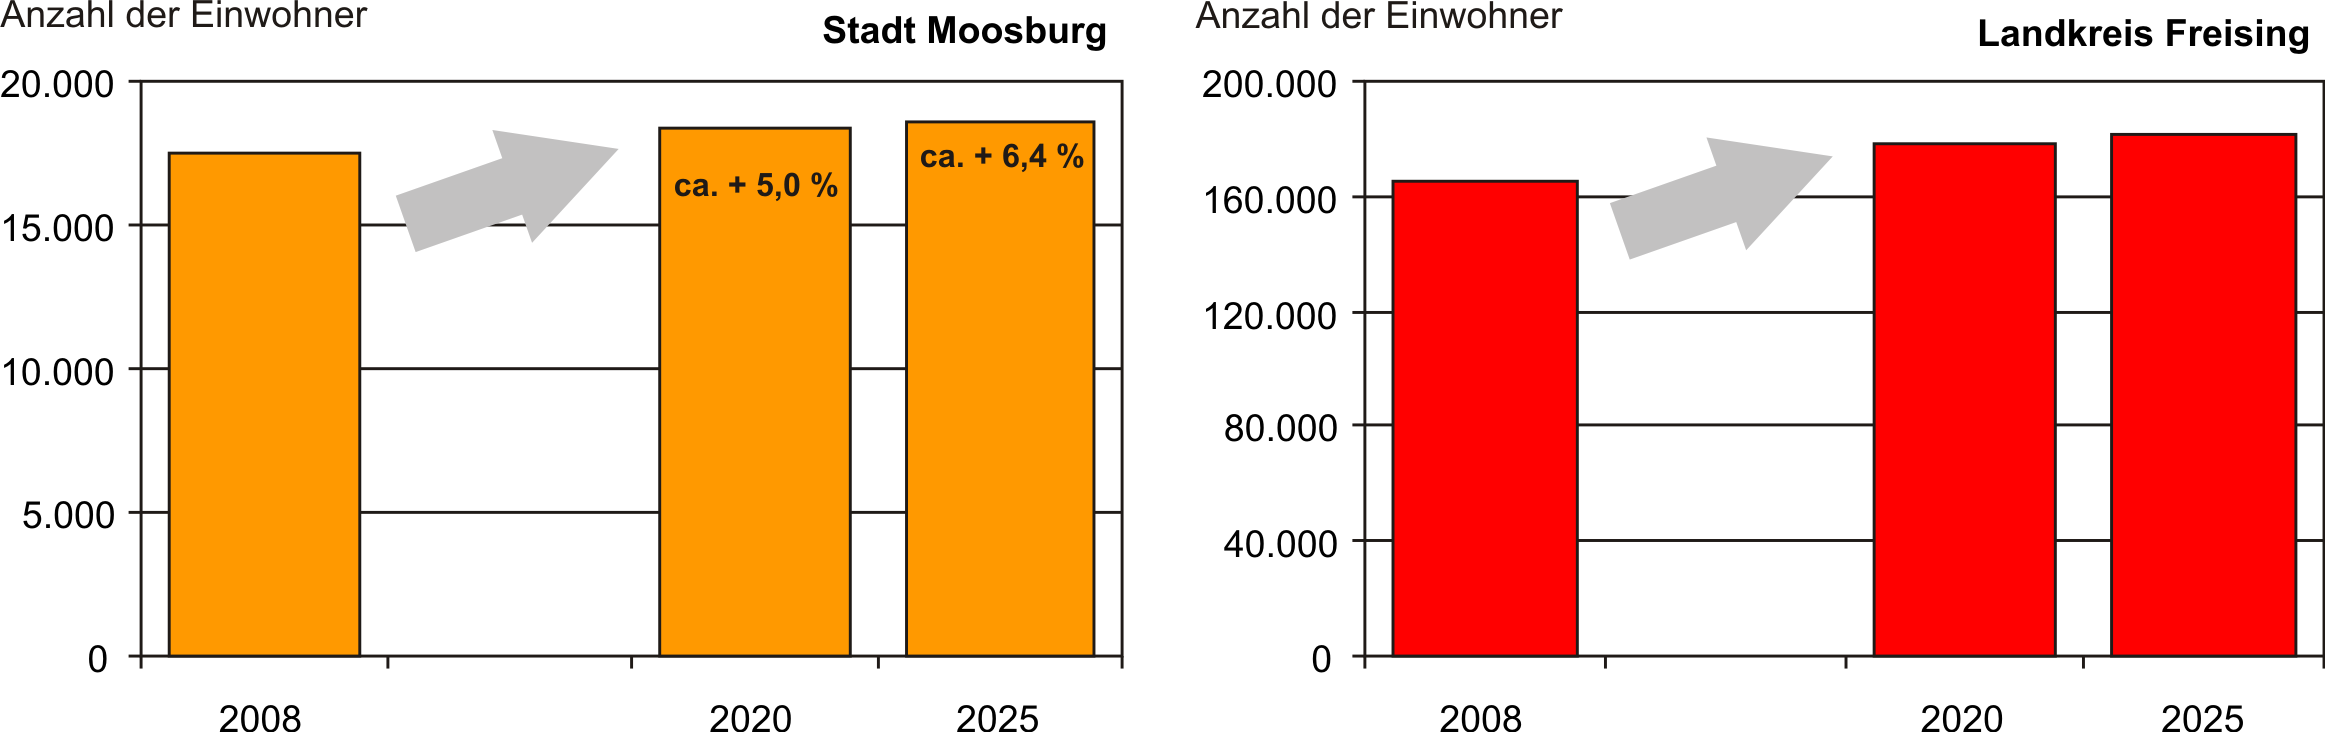 Die zukünftige Bevölkerungsentwicklung der Stadt Moosburg a.d. Isar wird ganz entscheidend von der wirtschaftlichen Entwicklung und ihrer Attraktivität als Wohnstandort beeinflusst.